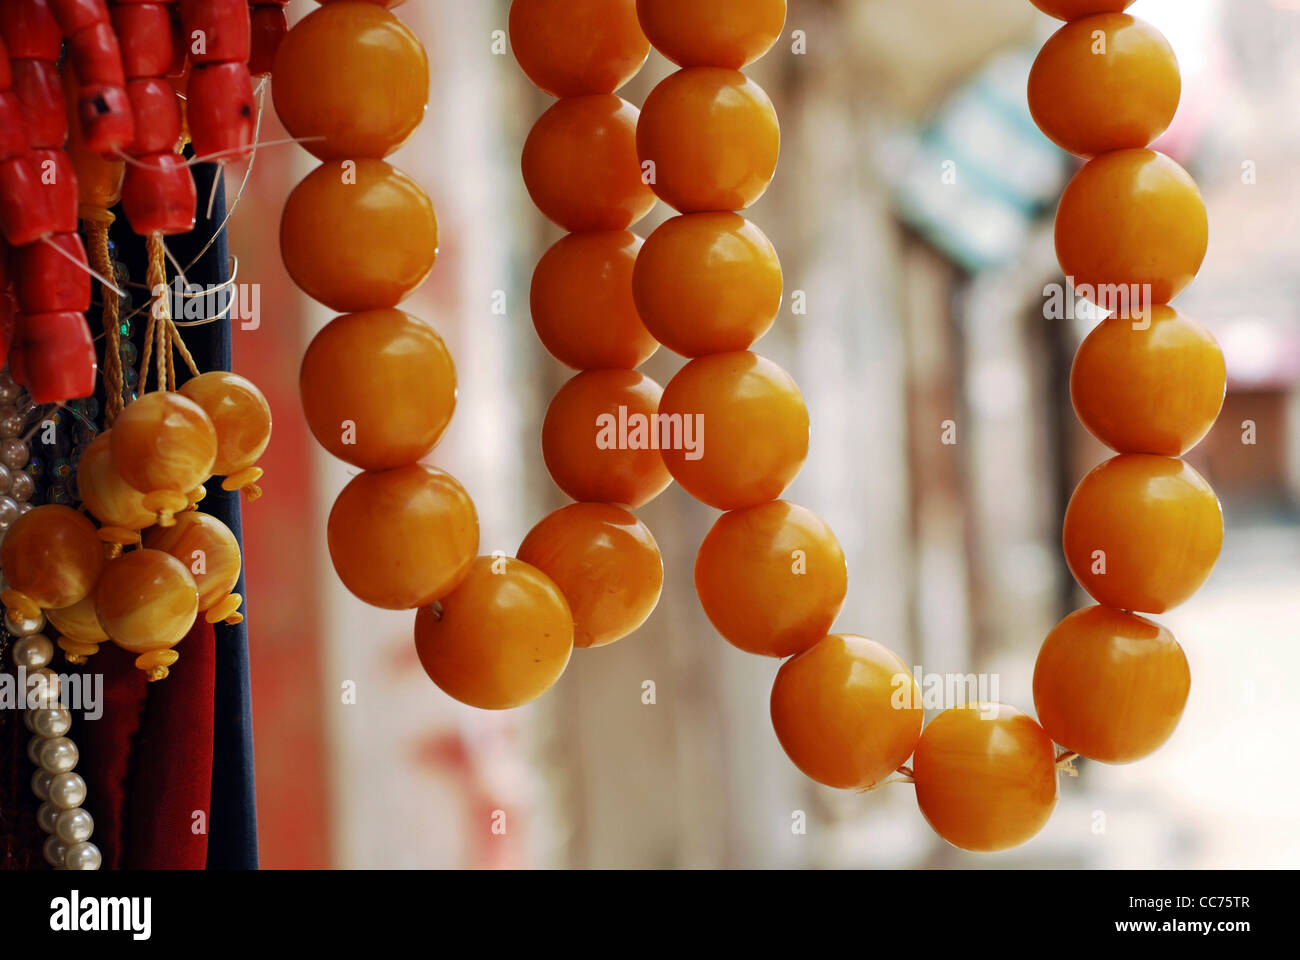 Yemen, Sanaa, close-up on orange prayer beads Stock Photo